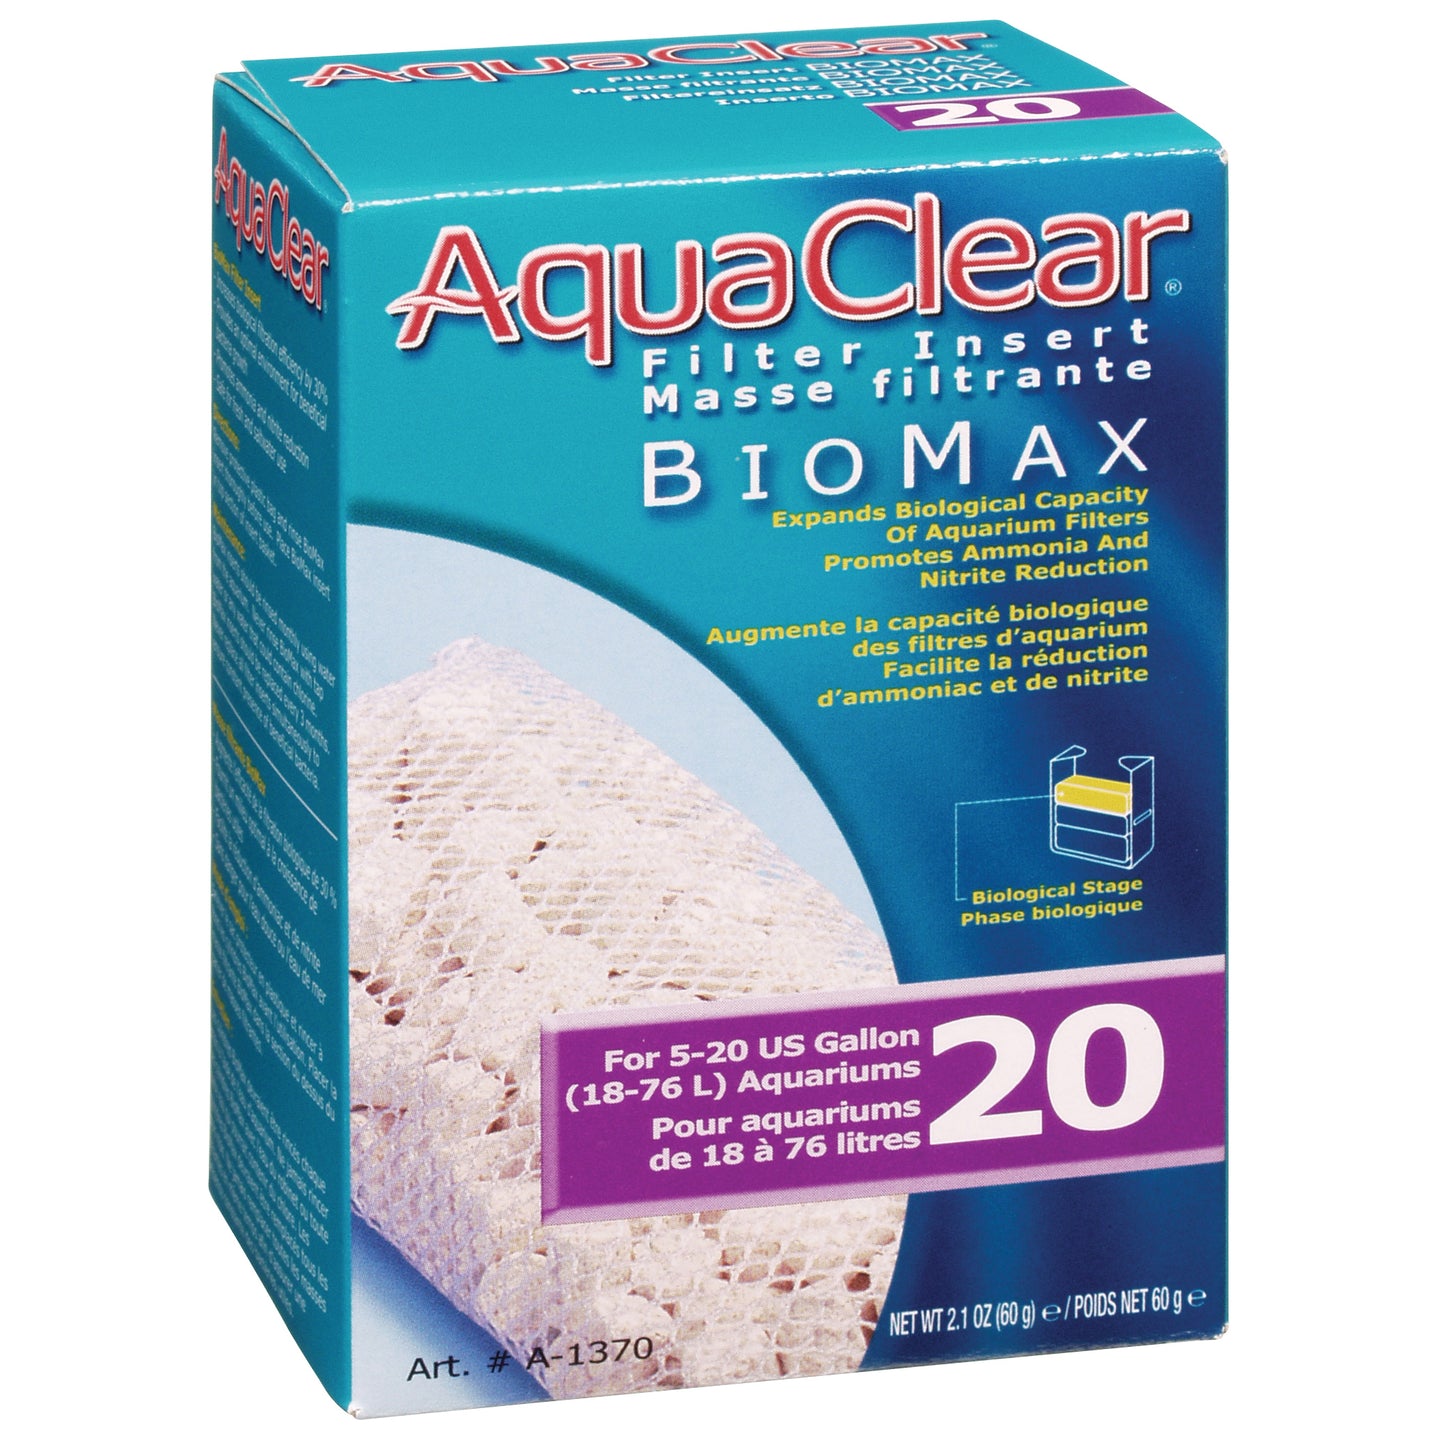 AquaClear 20 BioMax Filter Insert